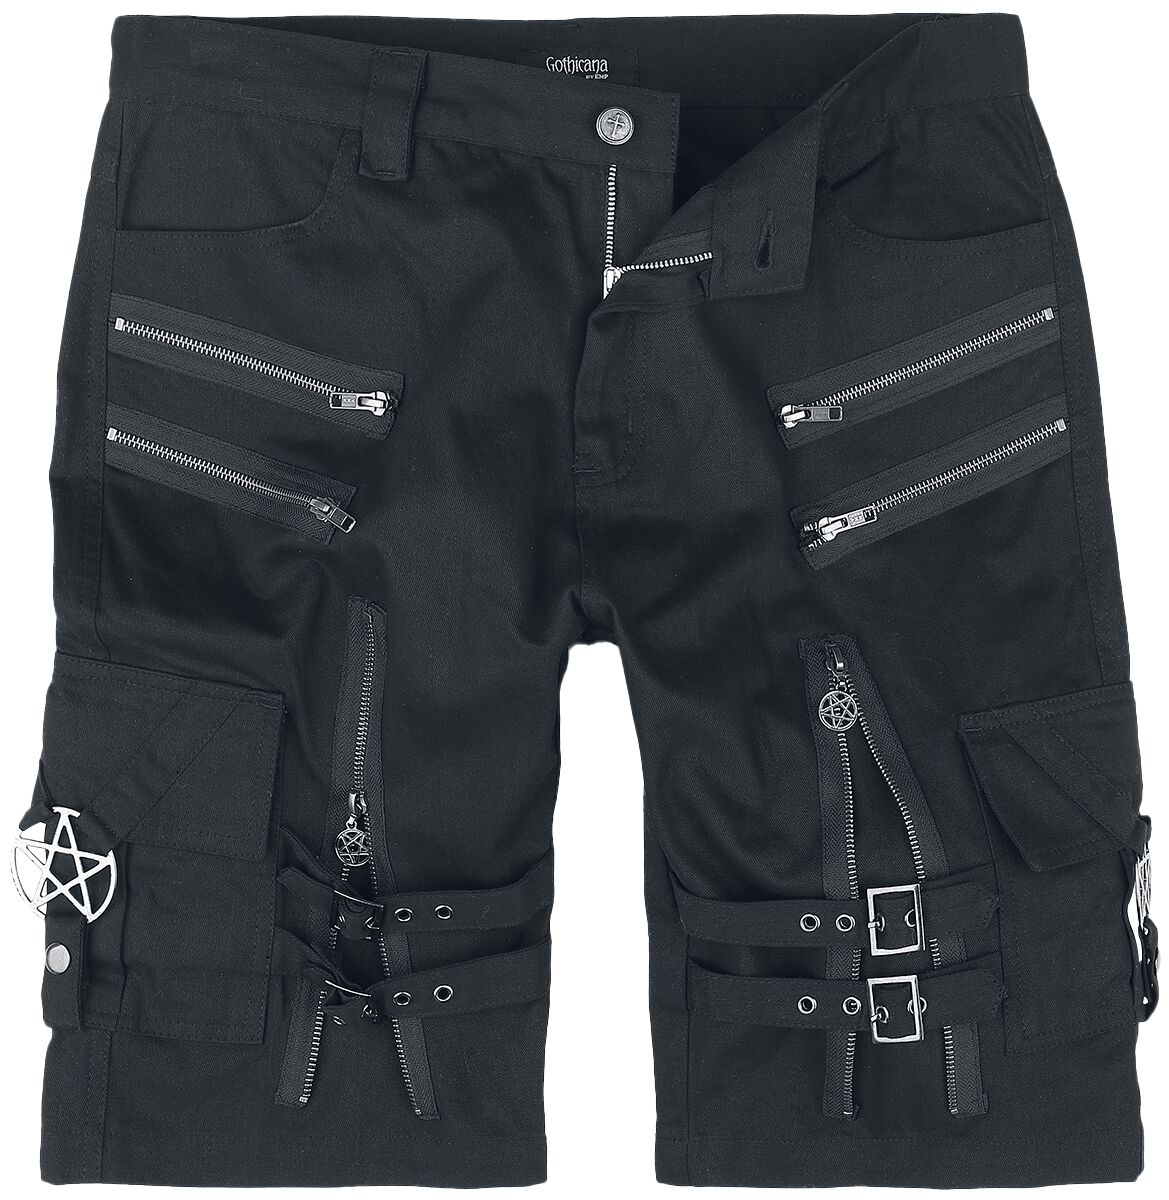 Gothicana by EMP - Gothic Short - Shorts with straps, buckles and zipper - S bis XXL - für Männer - Größe L - schwarz